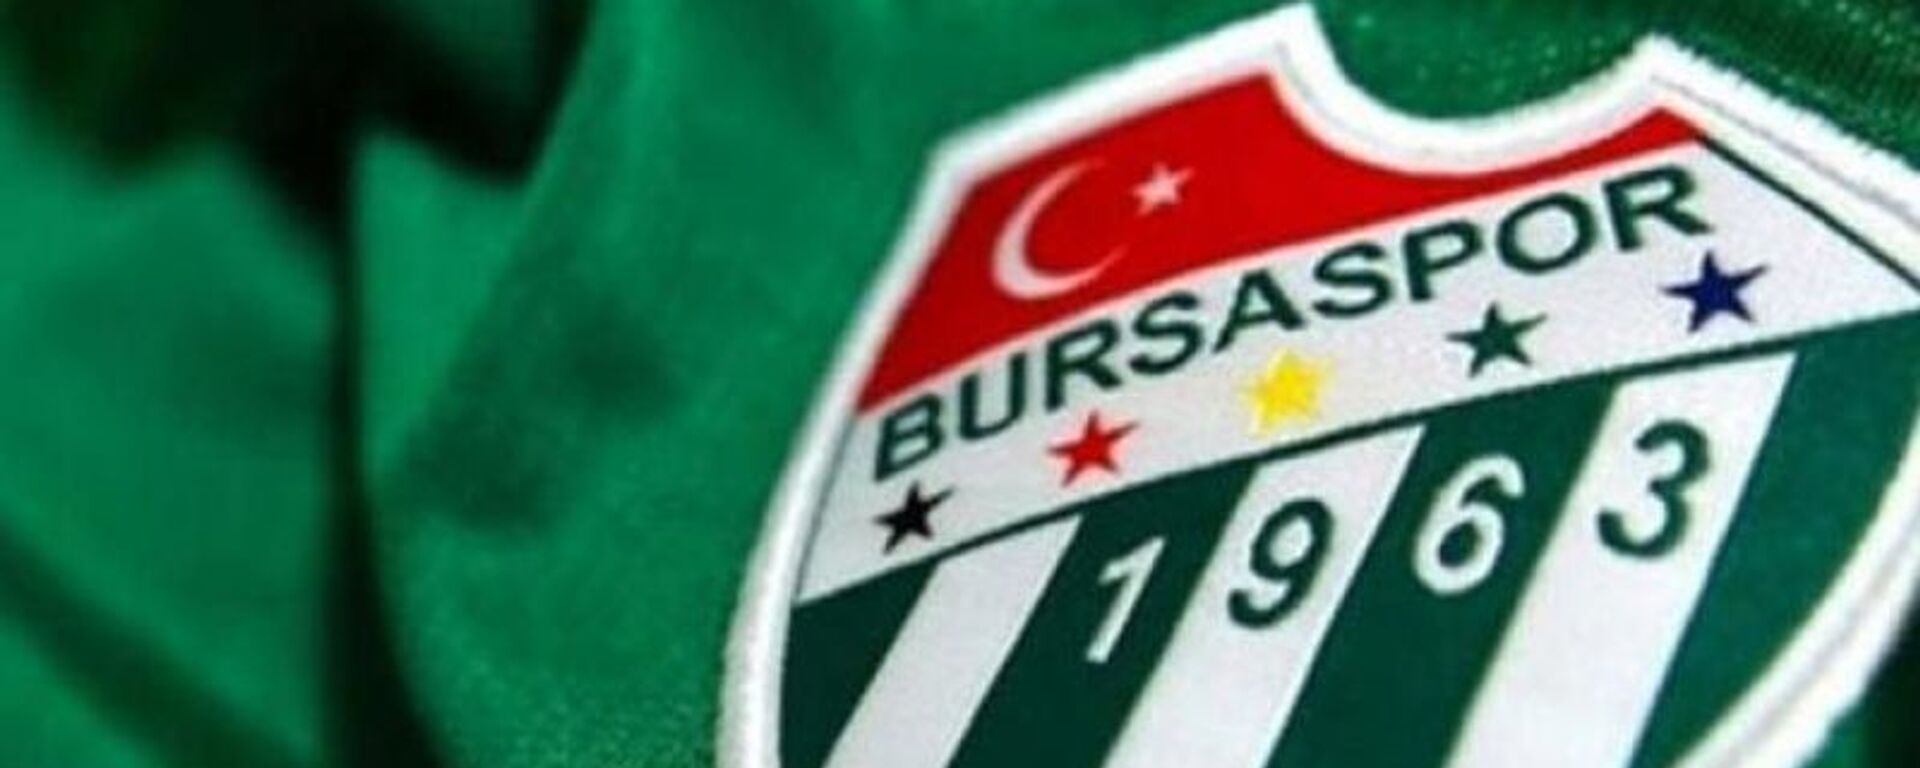 Bursaspor - Logo - Amblem - Sputnik Türkiye, 1920, 07.12.2021